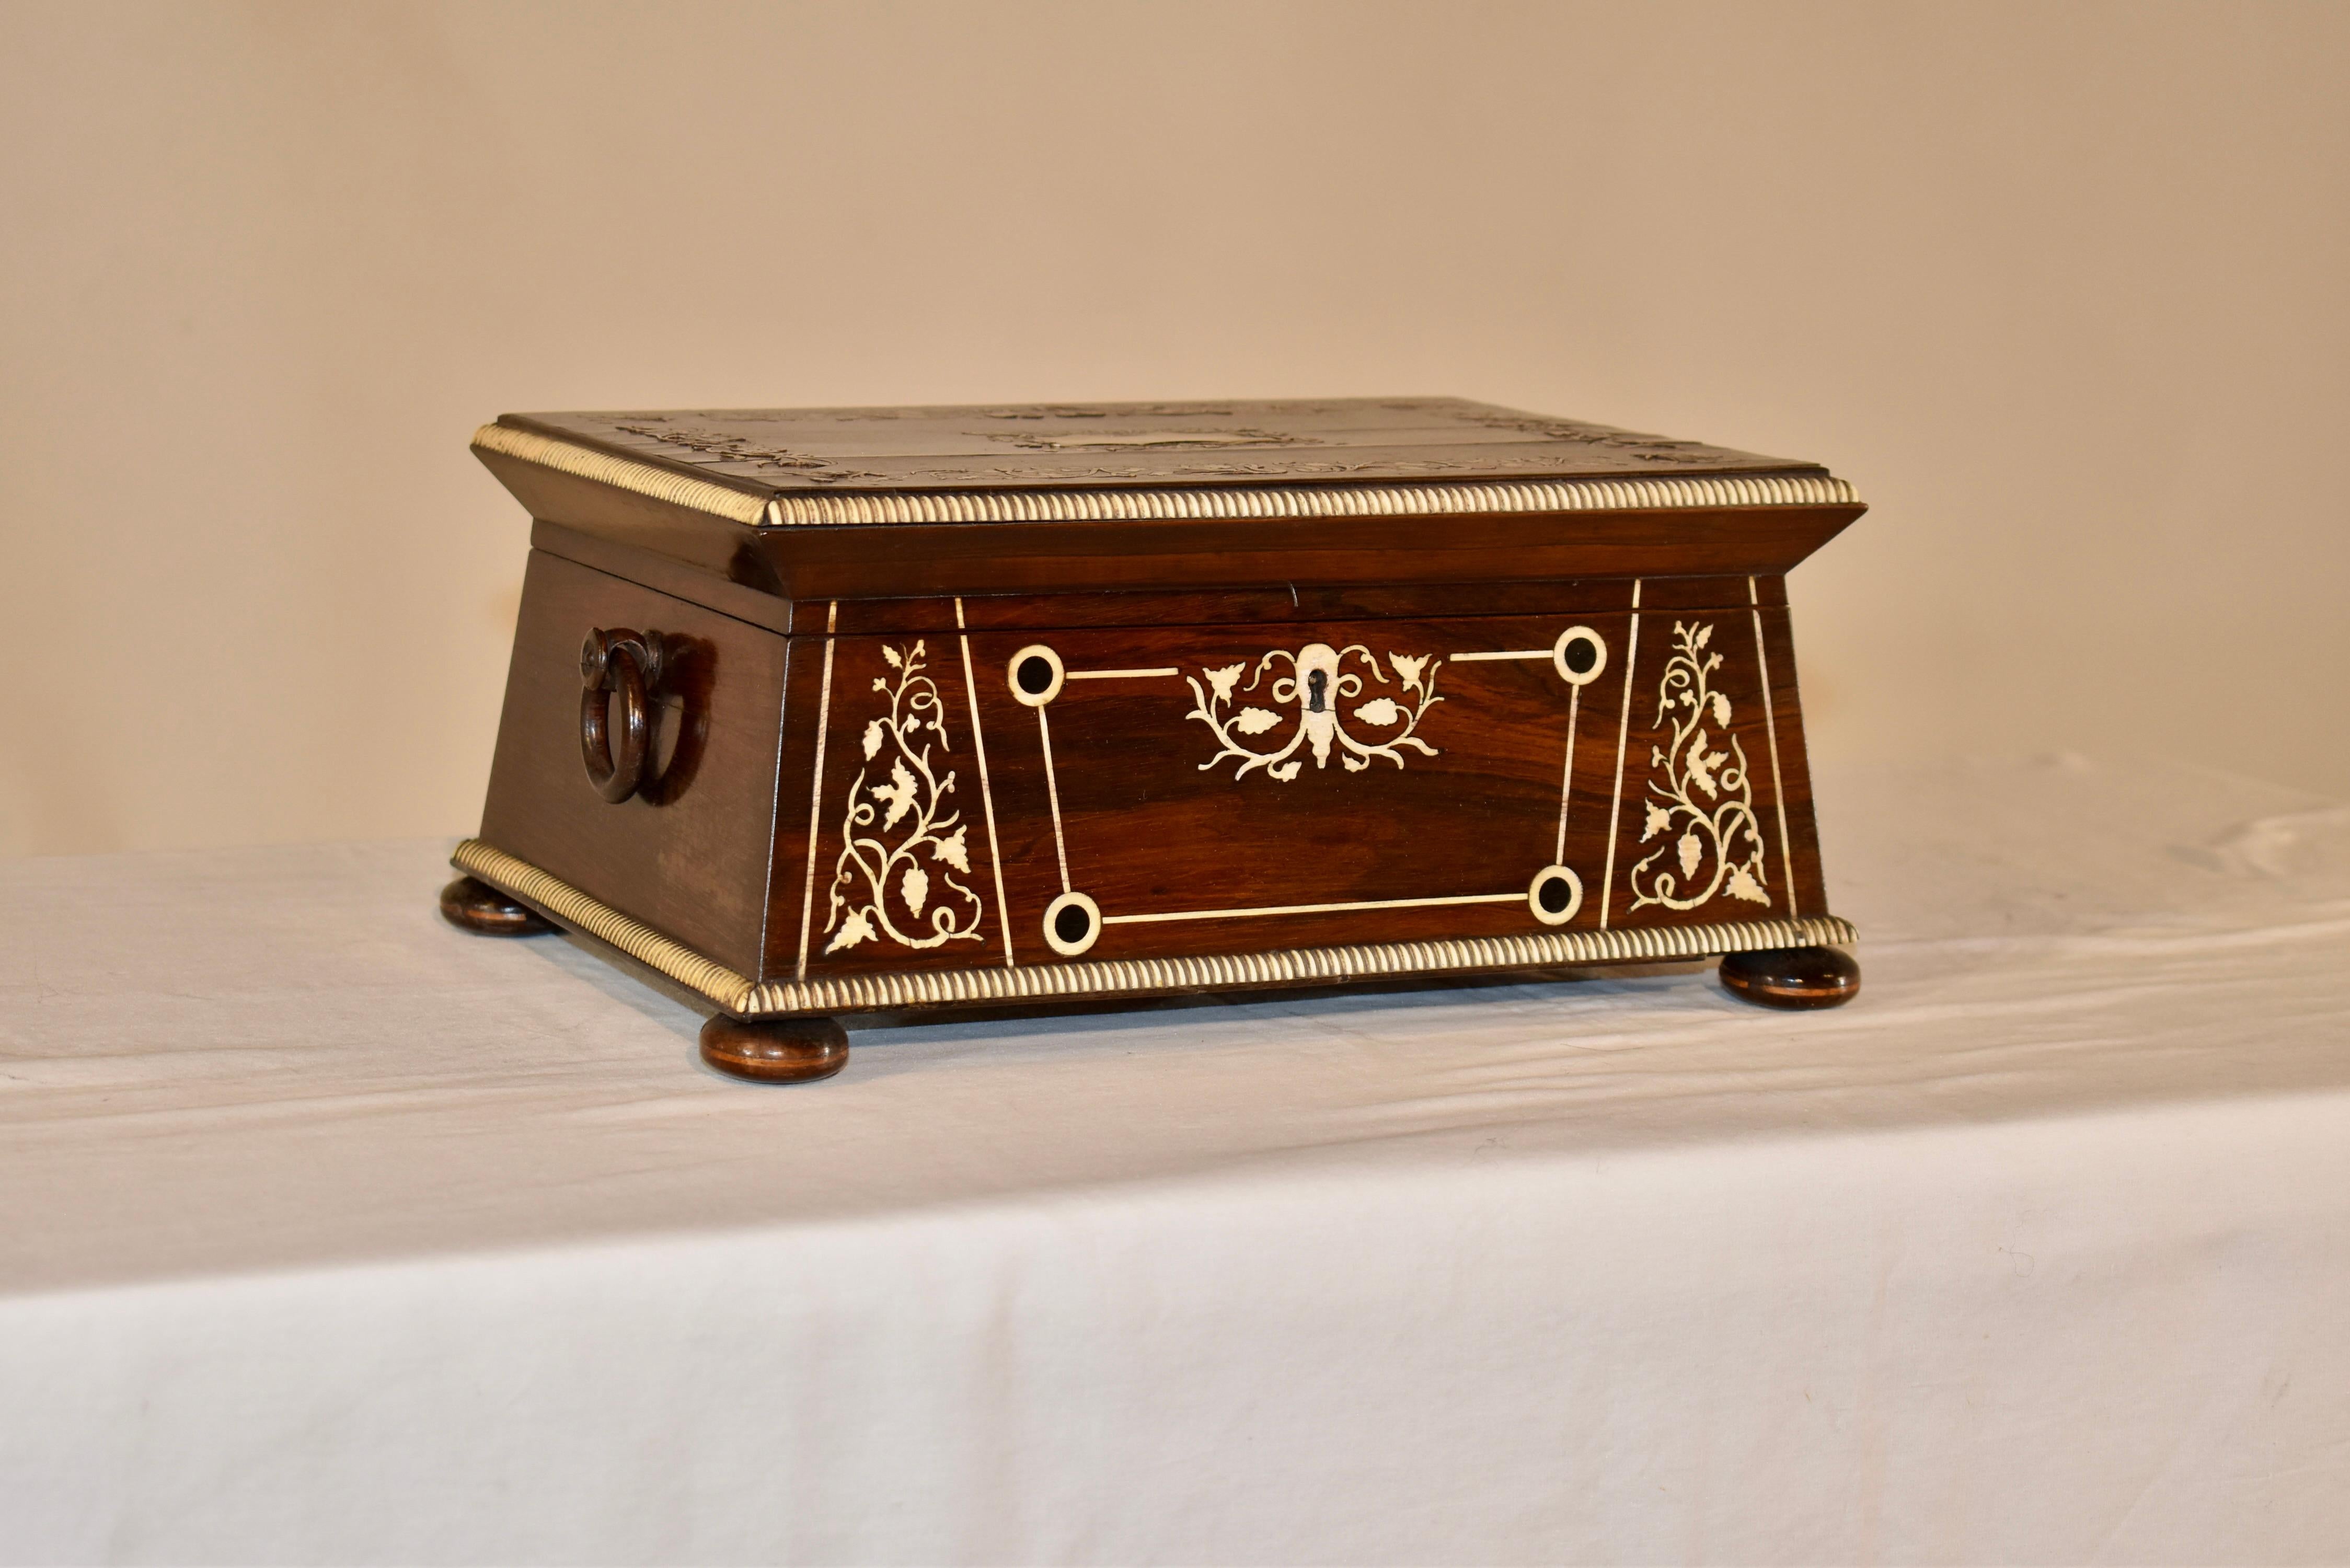 Coffret anglais du 19e siècle en bois de rose au grain exquis.  La boîte présente de magnifiques motifs incrustés sur le dessus et le devant en ivoire, ainsi qu'une garniture perlée en ivoire.  Deux poignées se trouvent de chaque côté de la boîte,